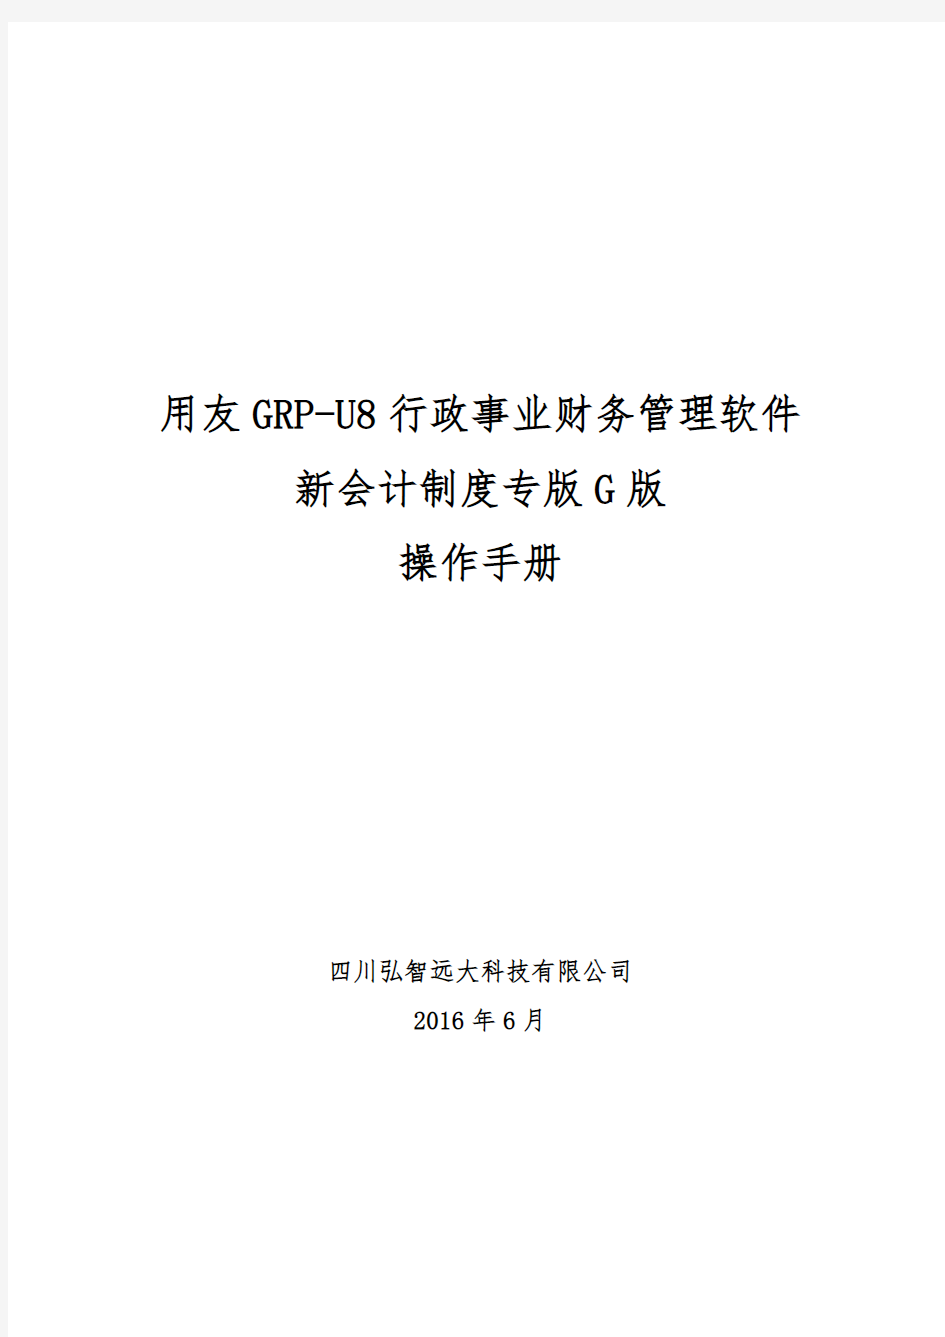 用友GRP-U8-行政事业单位财务管理软件G版操作手册